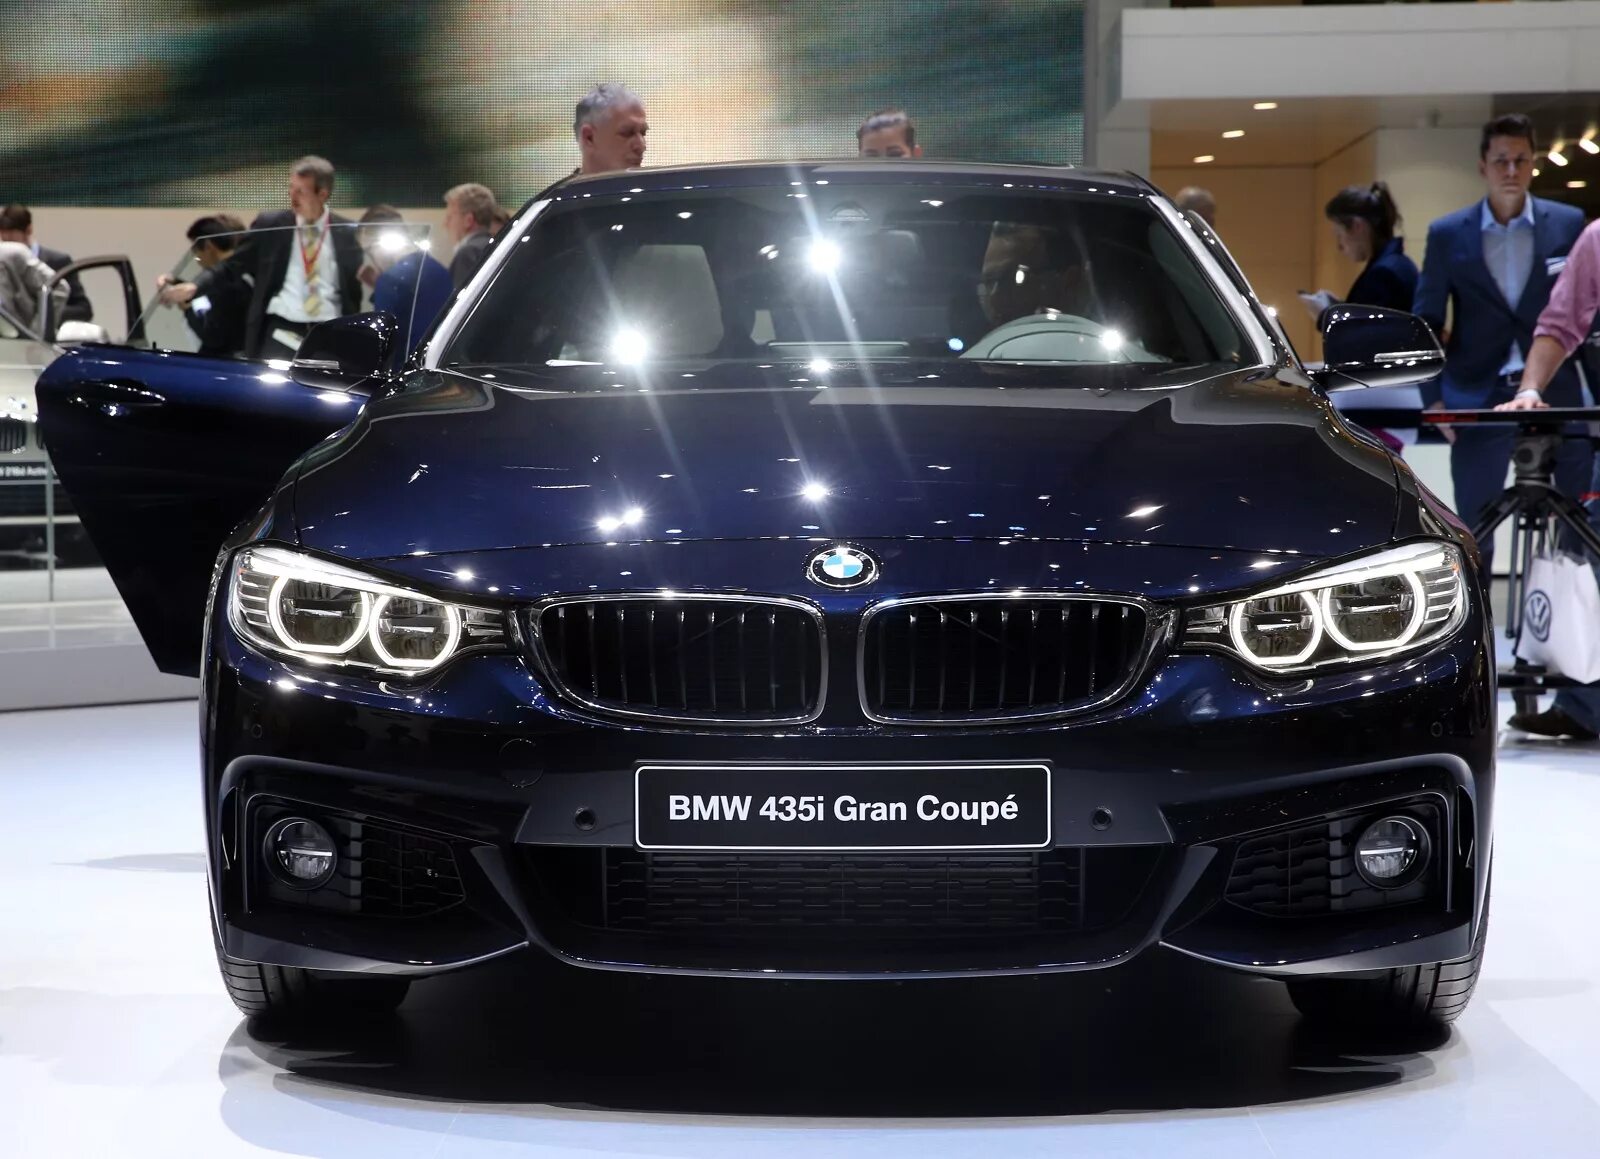 Марки машин немецких BMW. BMW популярные. БМВ известных брендов. Германский автомобиль БМВ.